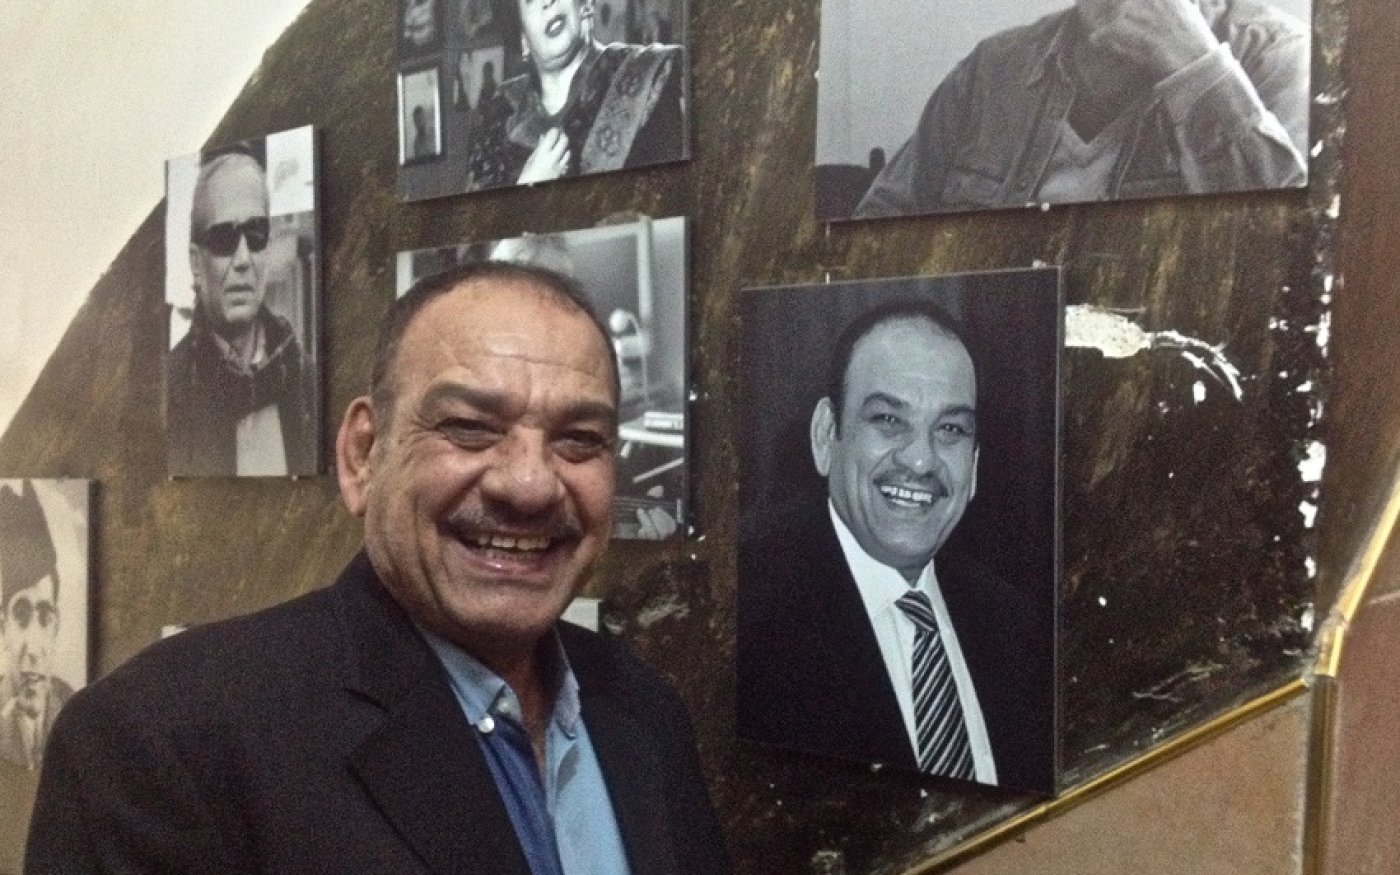 Le directeur de la troupe nationale de danse irakienne, Fouad Thanoon, se tient près de sa photo sur un « mur de la renommée » dans le quartier de Karrada à Bagdad (MEE/Tom Wescott)